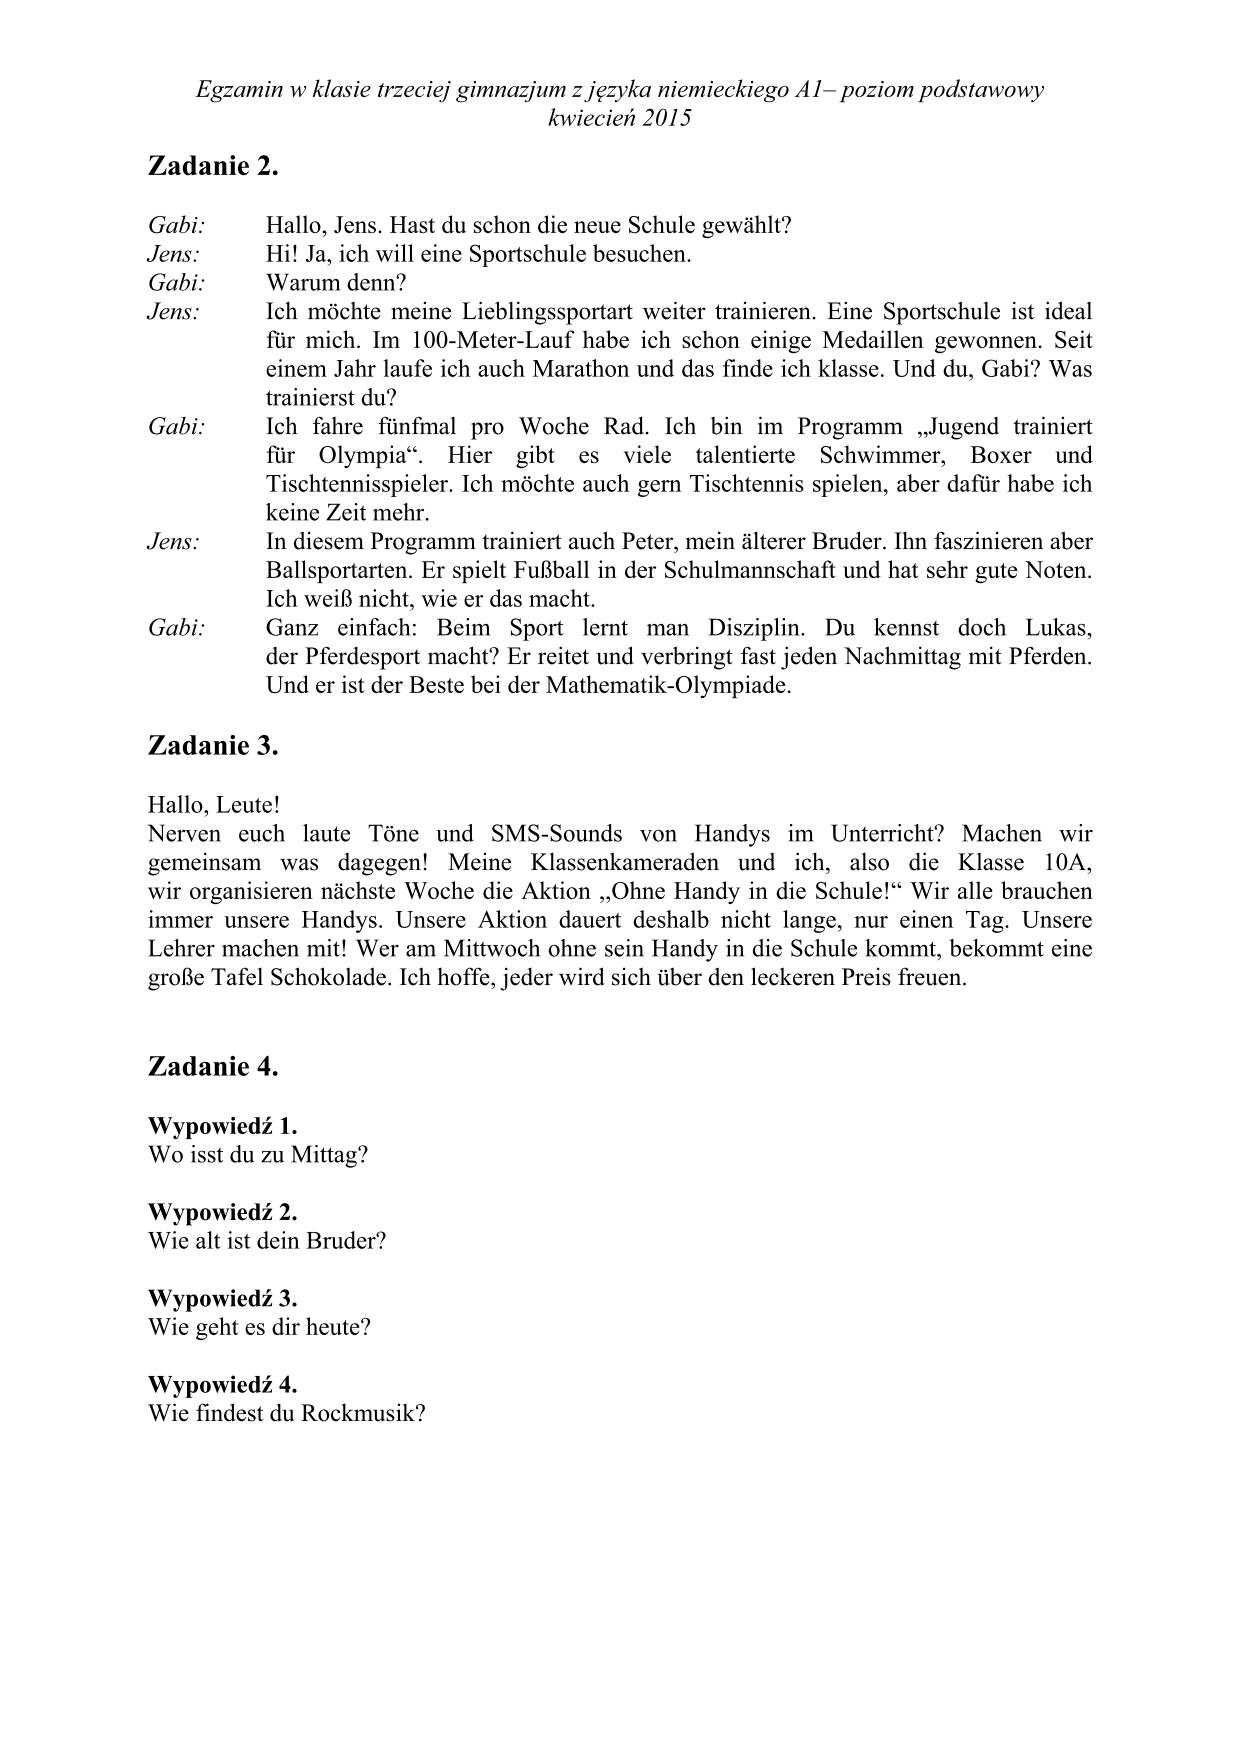 transkrypcja-niemiecki-poziom-podstawowy-egzamin-gimnazjalny-2015-2